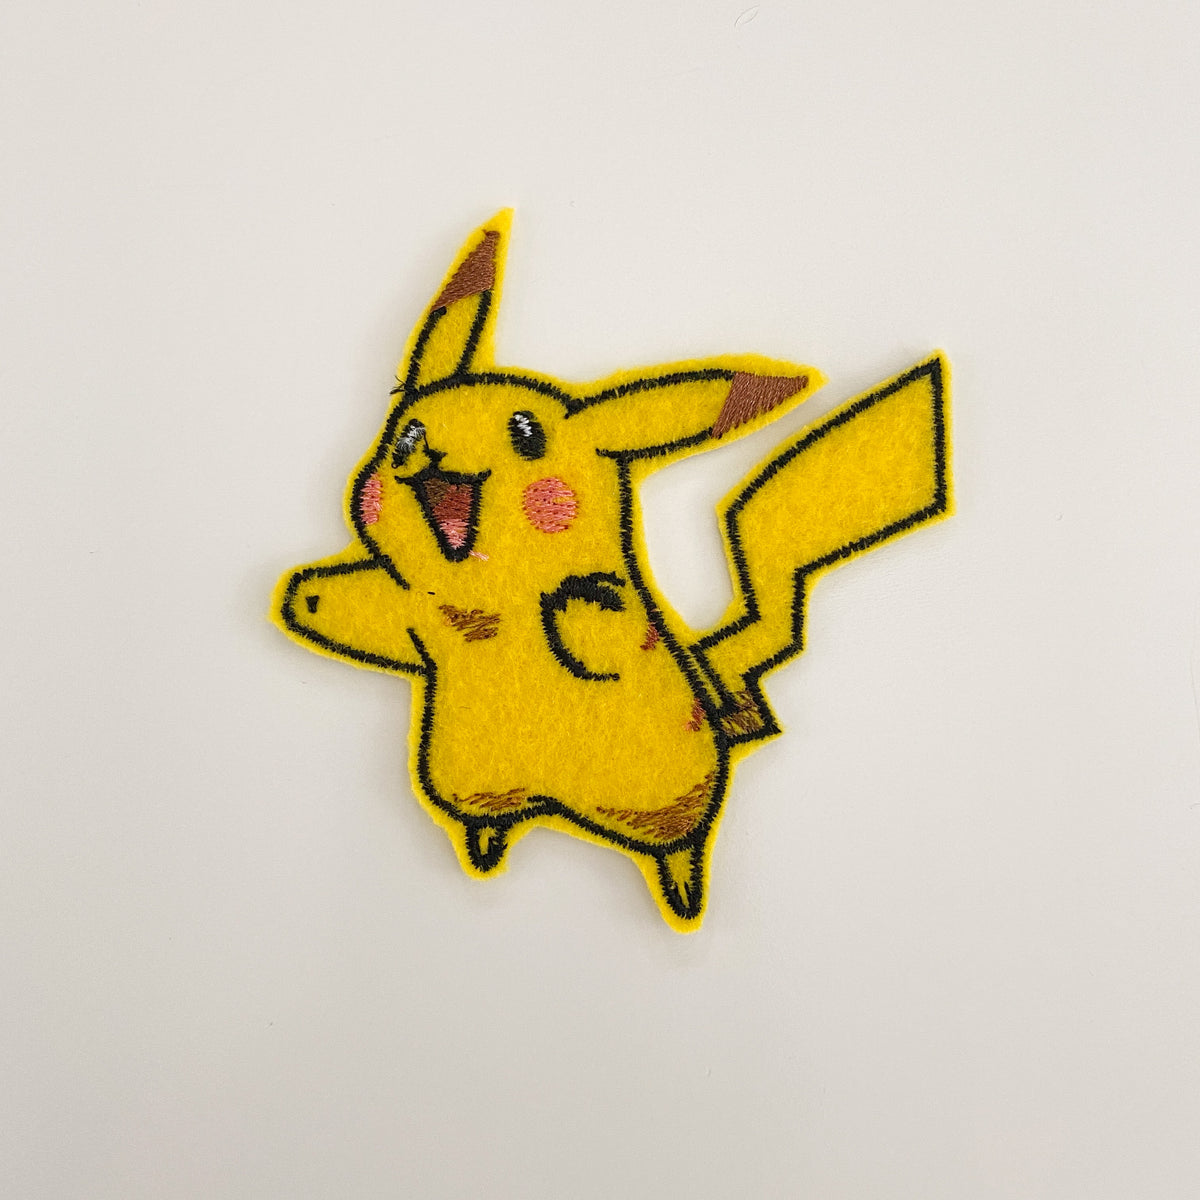 Flying Pikachu Pokemon Patch – JonnyCaps